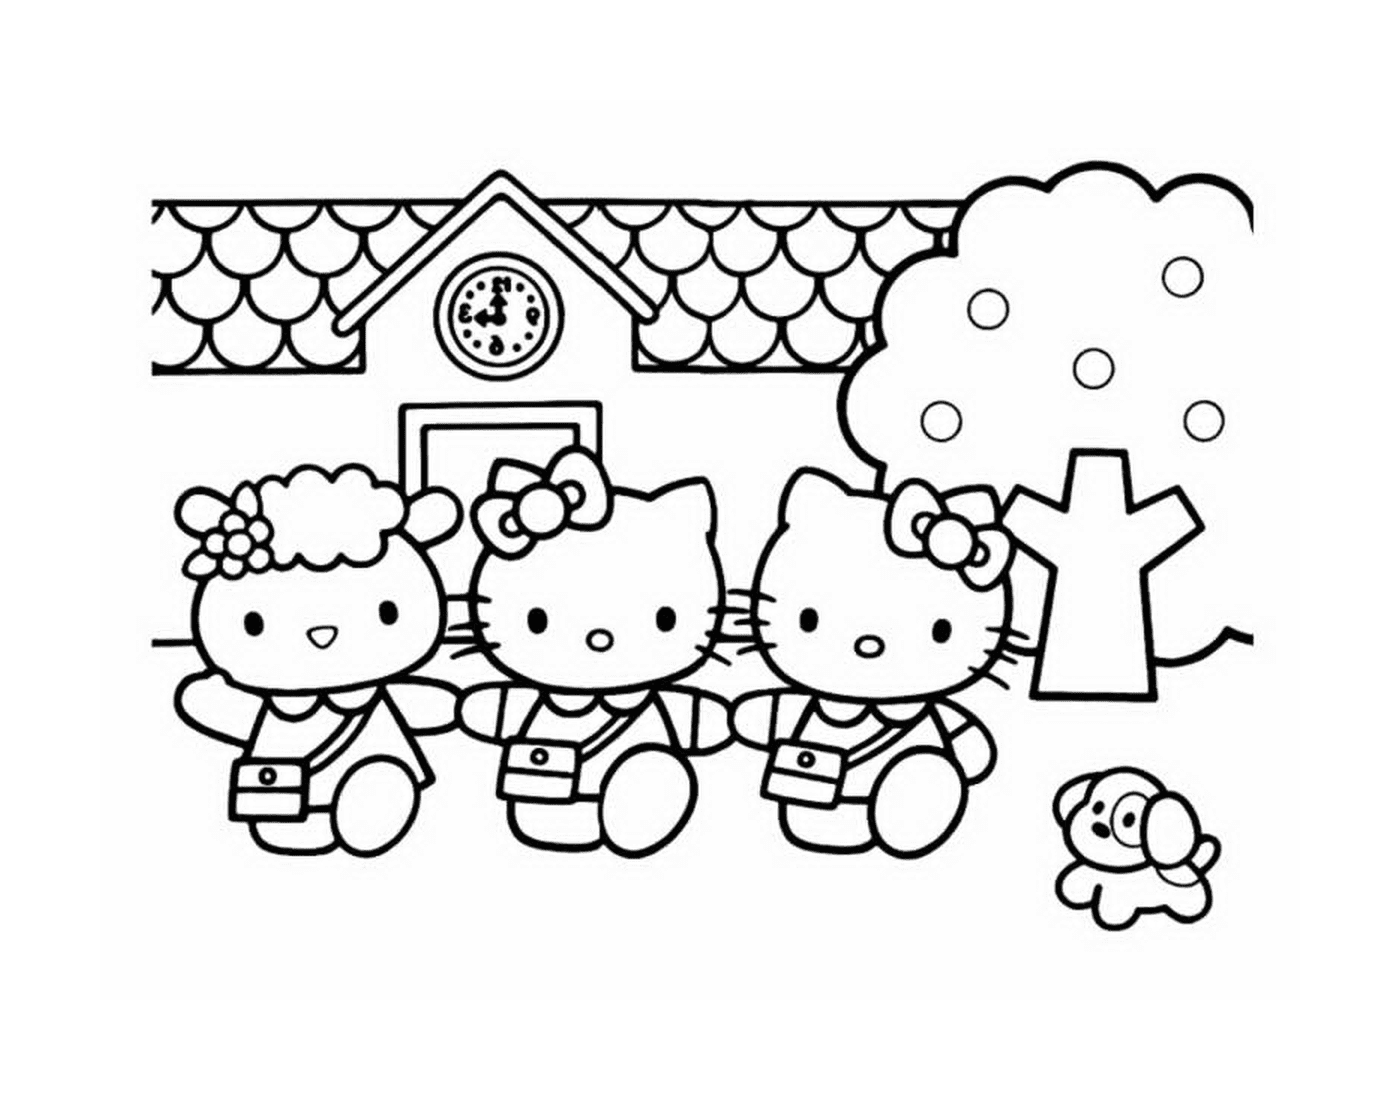  Un gruppo di Hello Kitty davanti ad una casa 